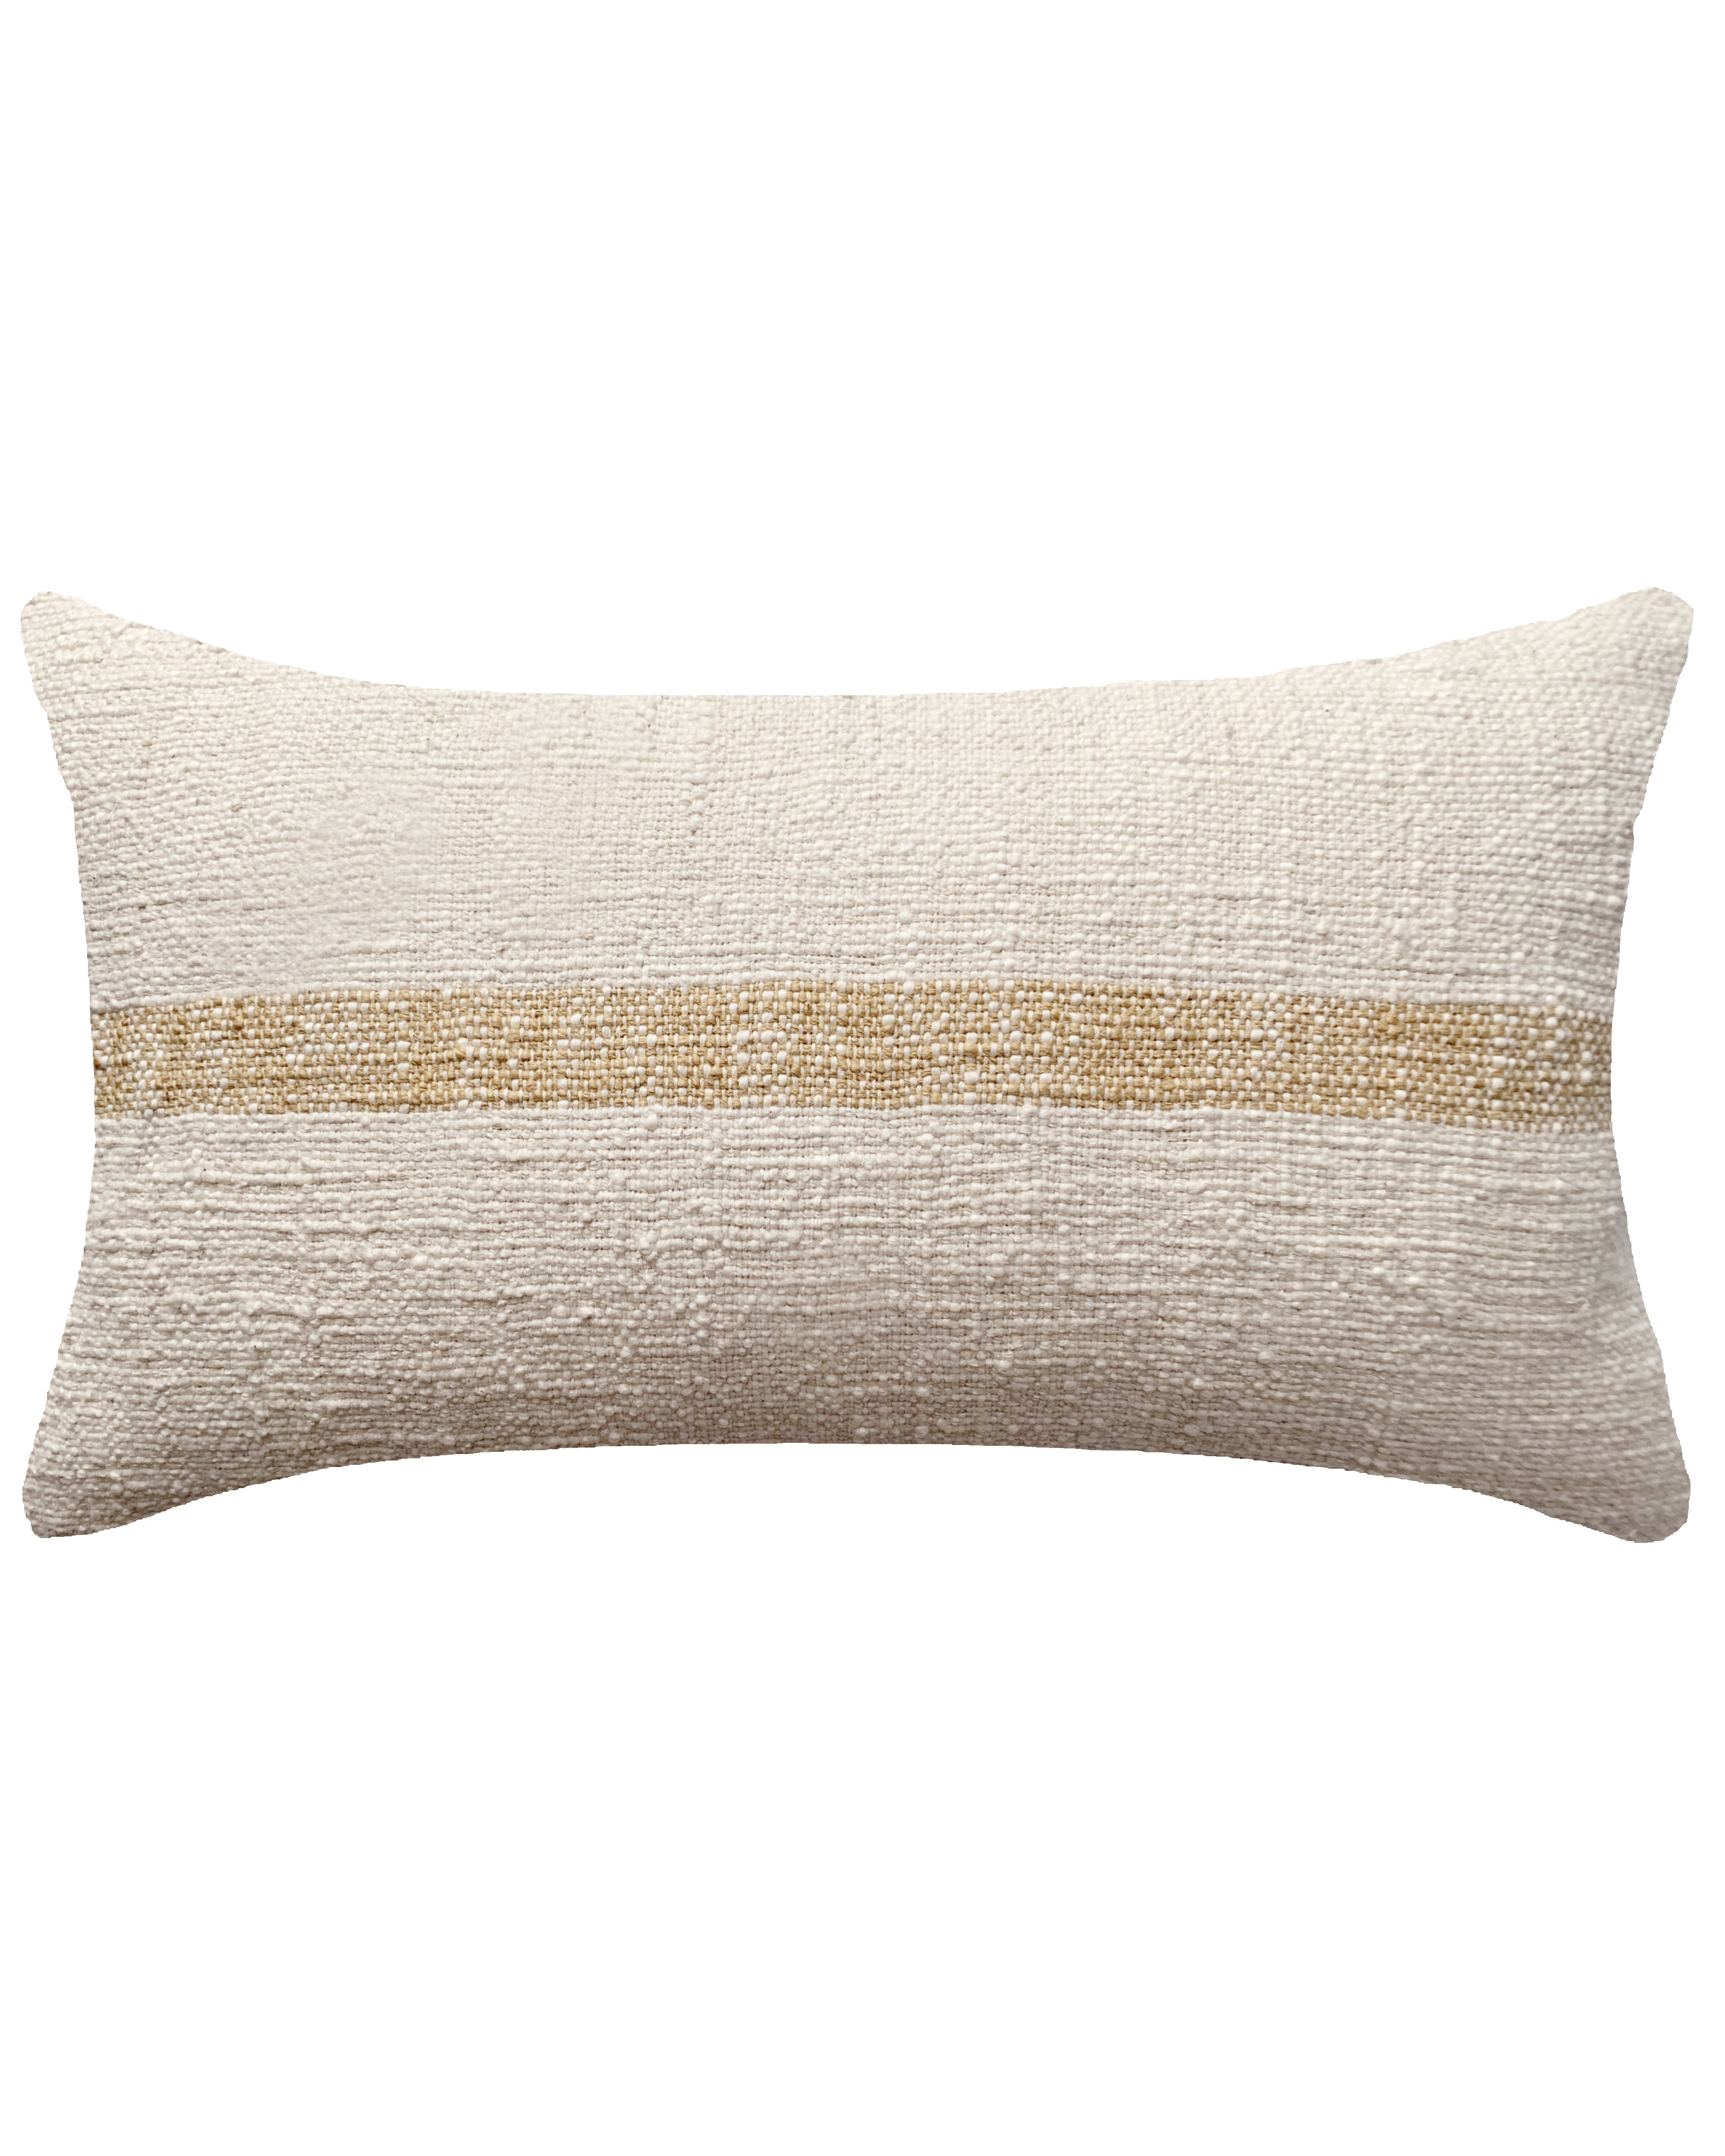 linus Pillow Cream, 20" x 12" - Image 0